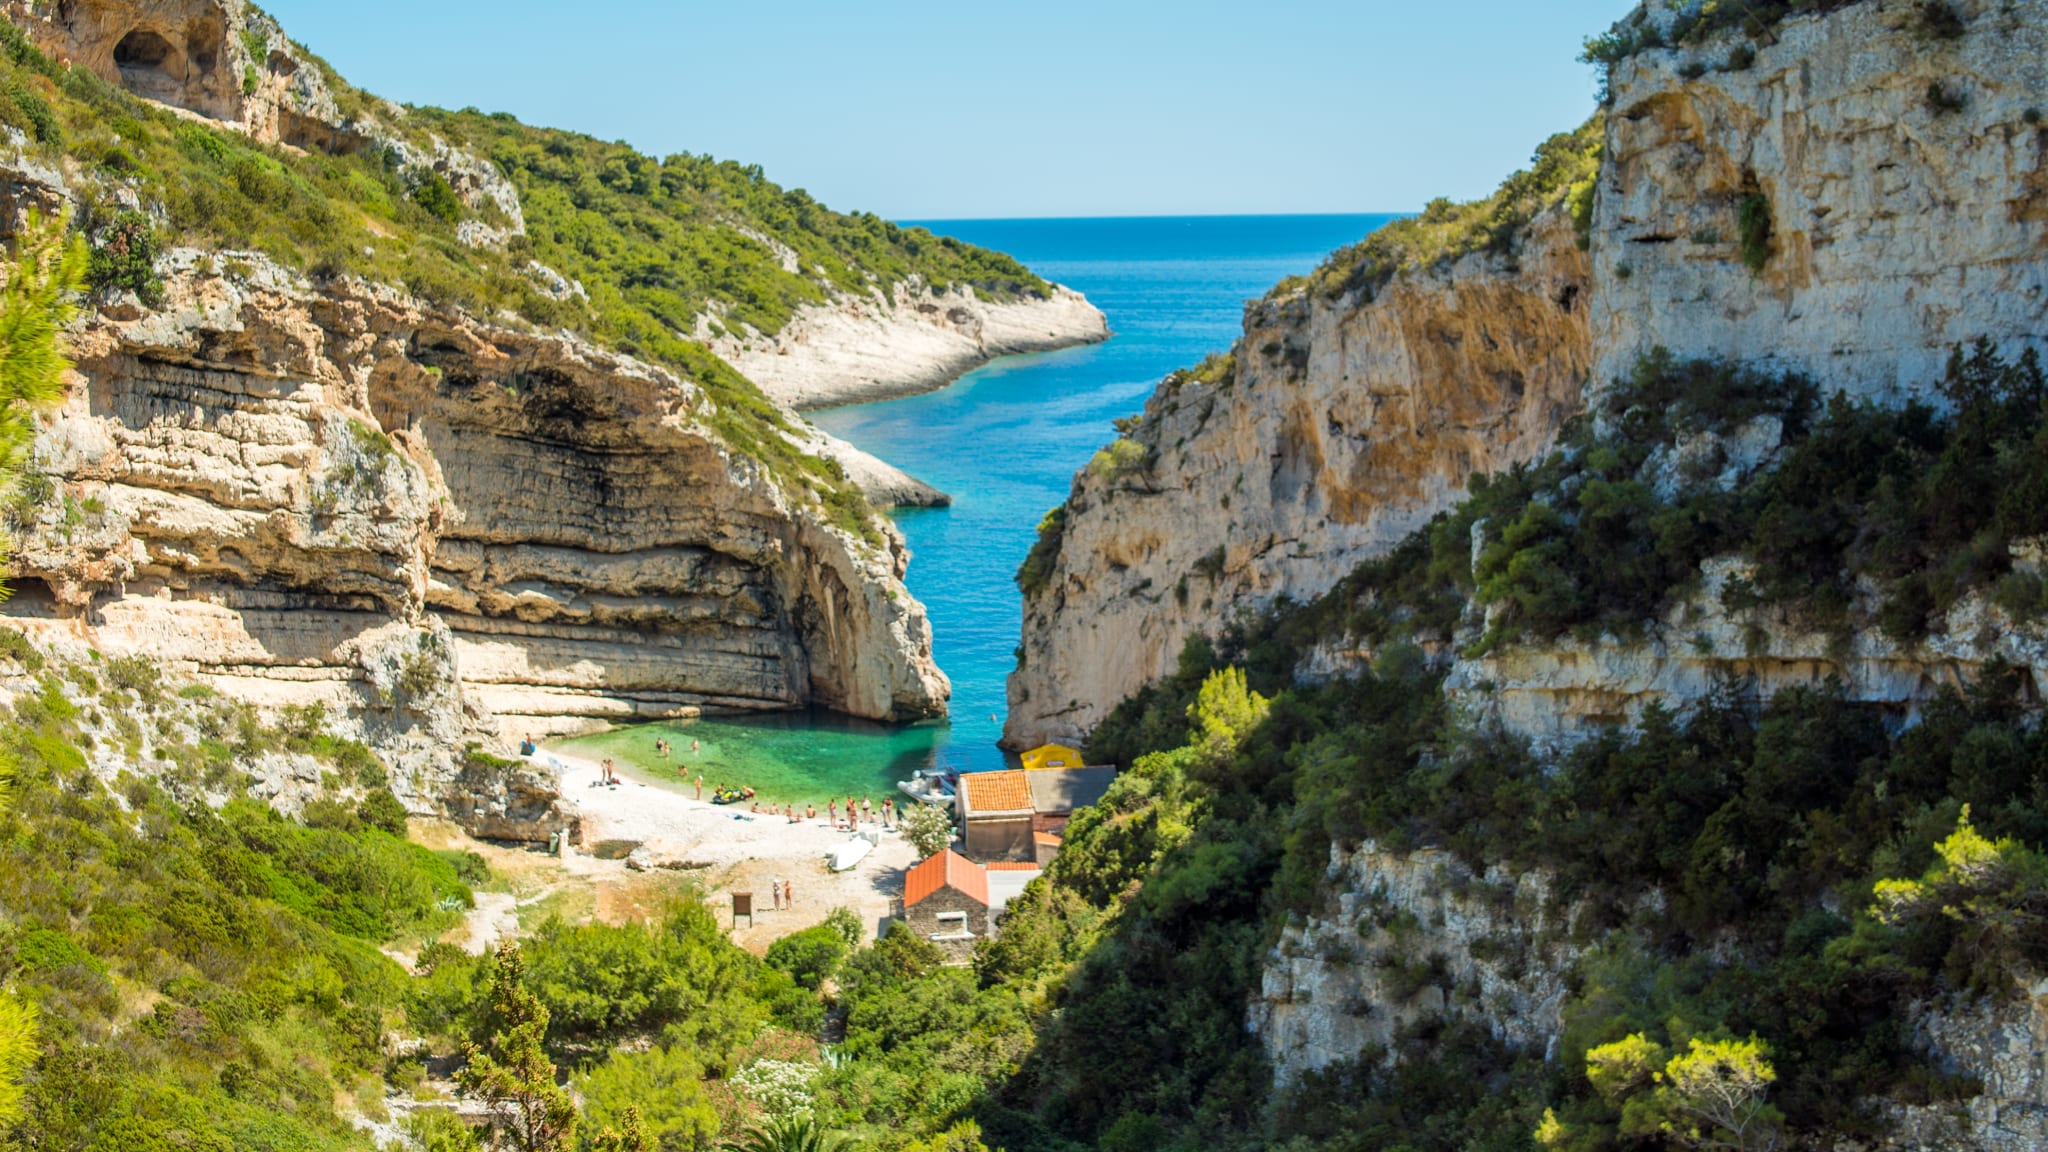 Bucht Stiniva, Insel Vis, Kroatien